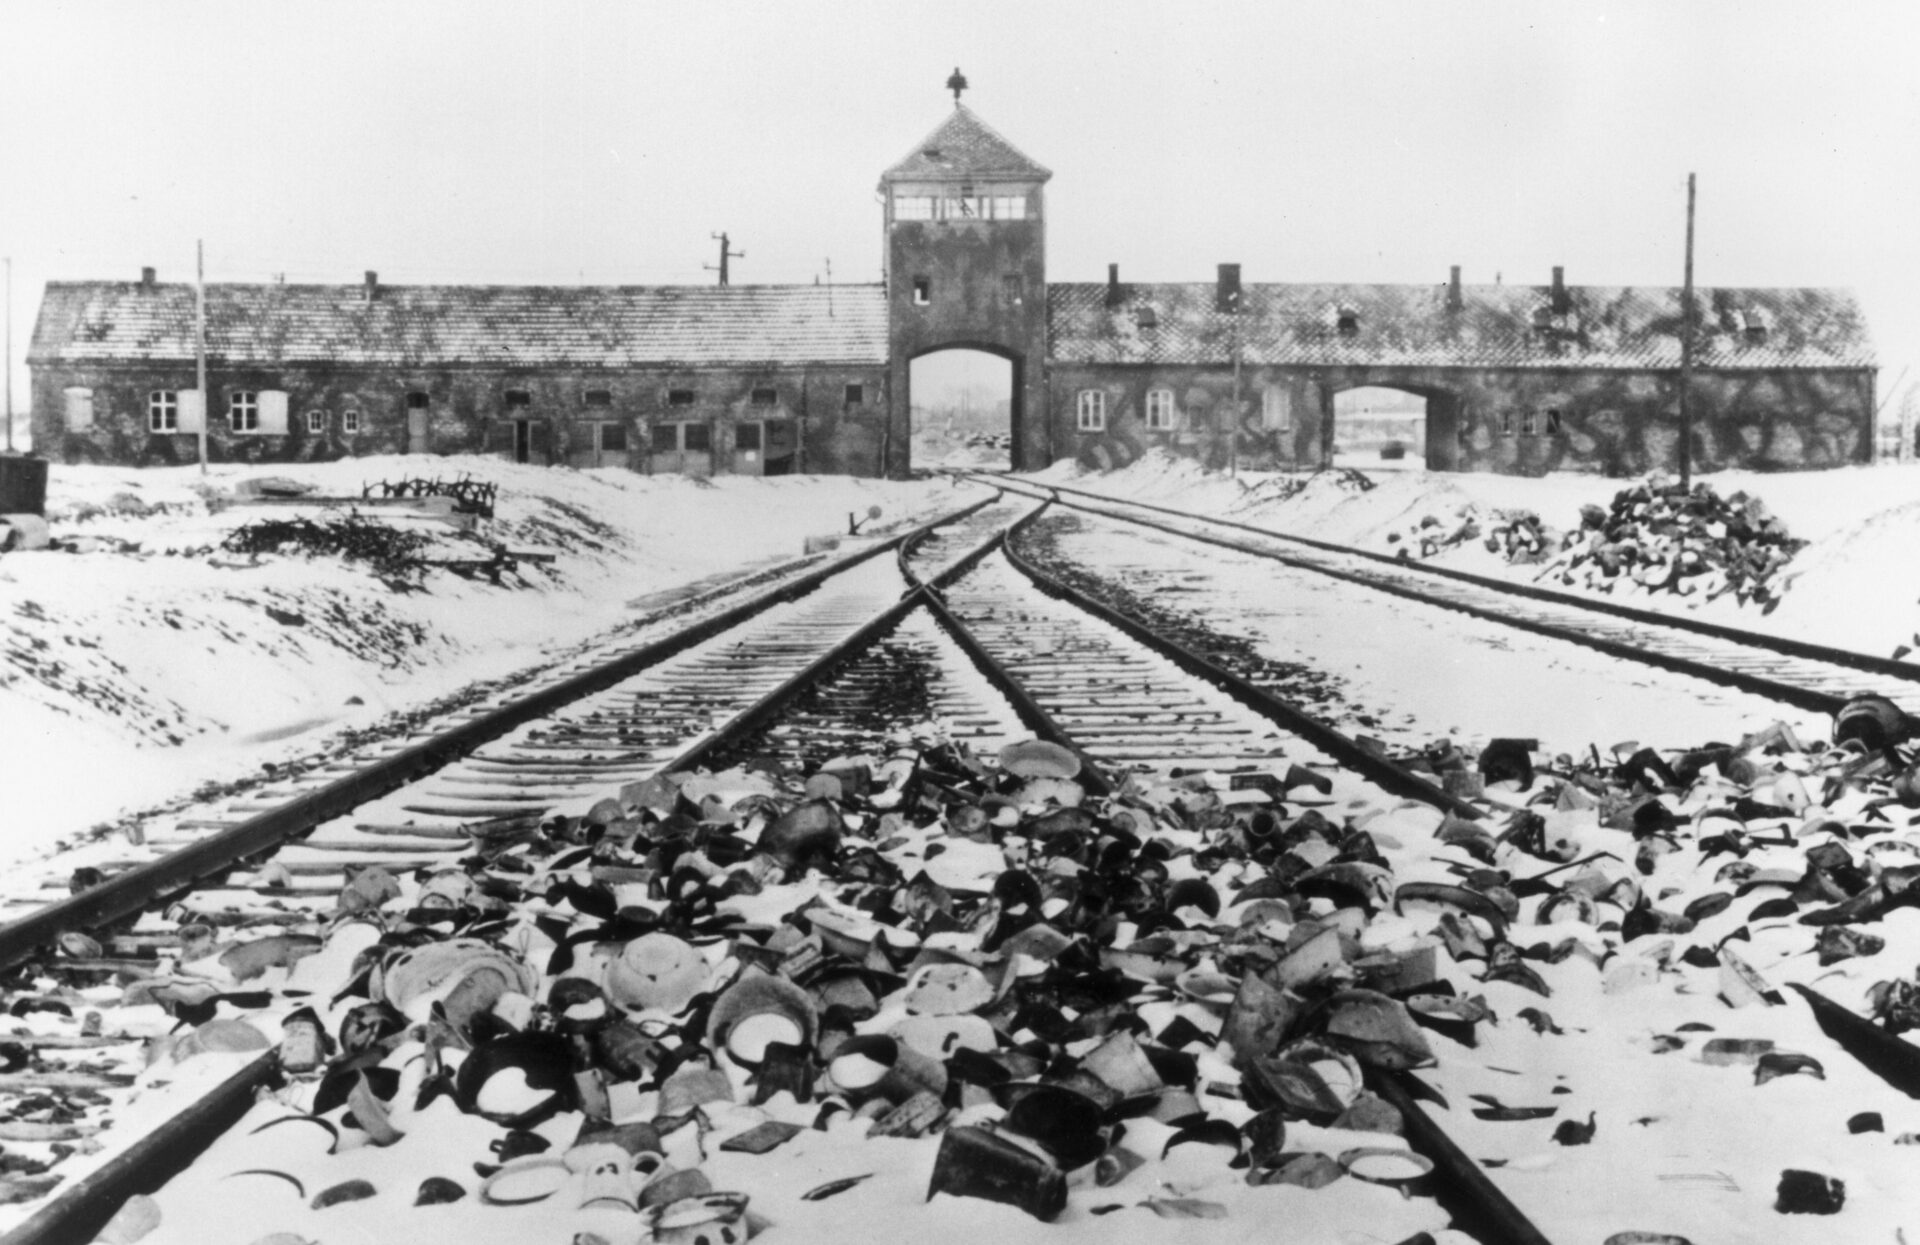 Stanisław Muchas Foto vom Torhaus des KZ Auschwitz-Birkenau